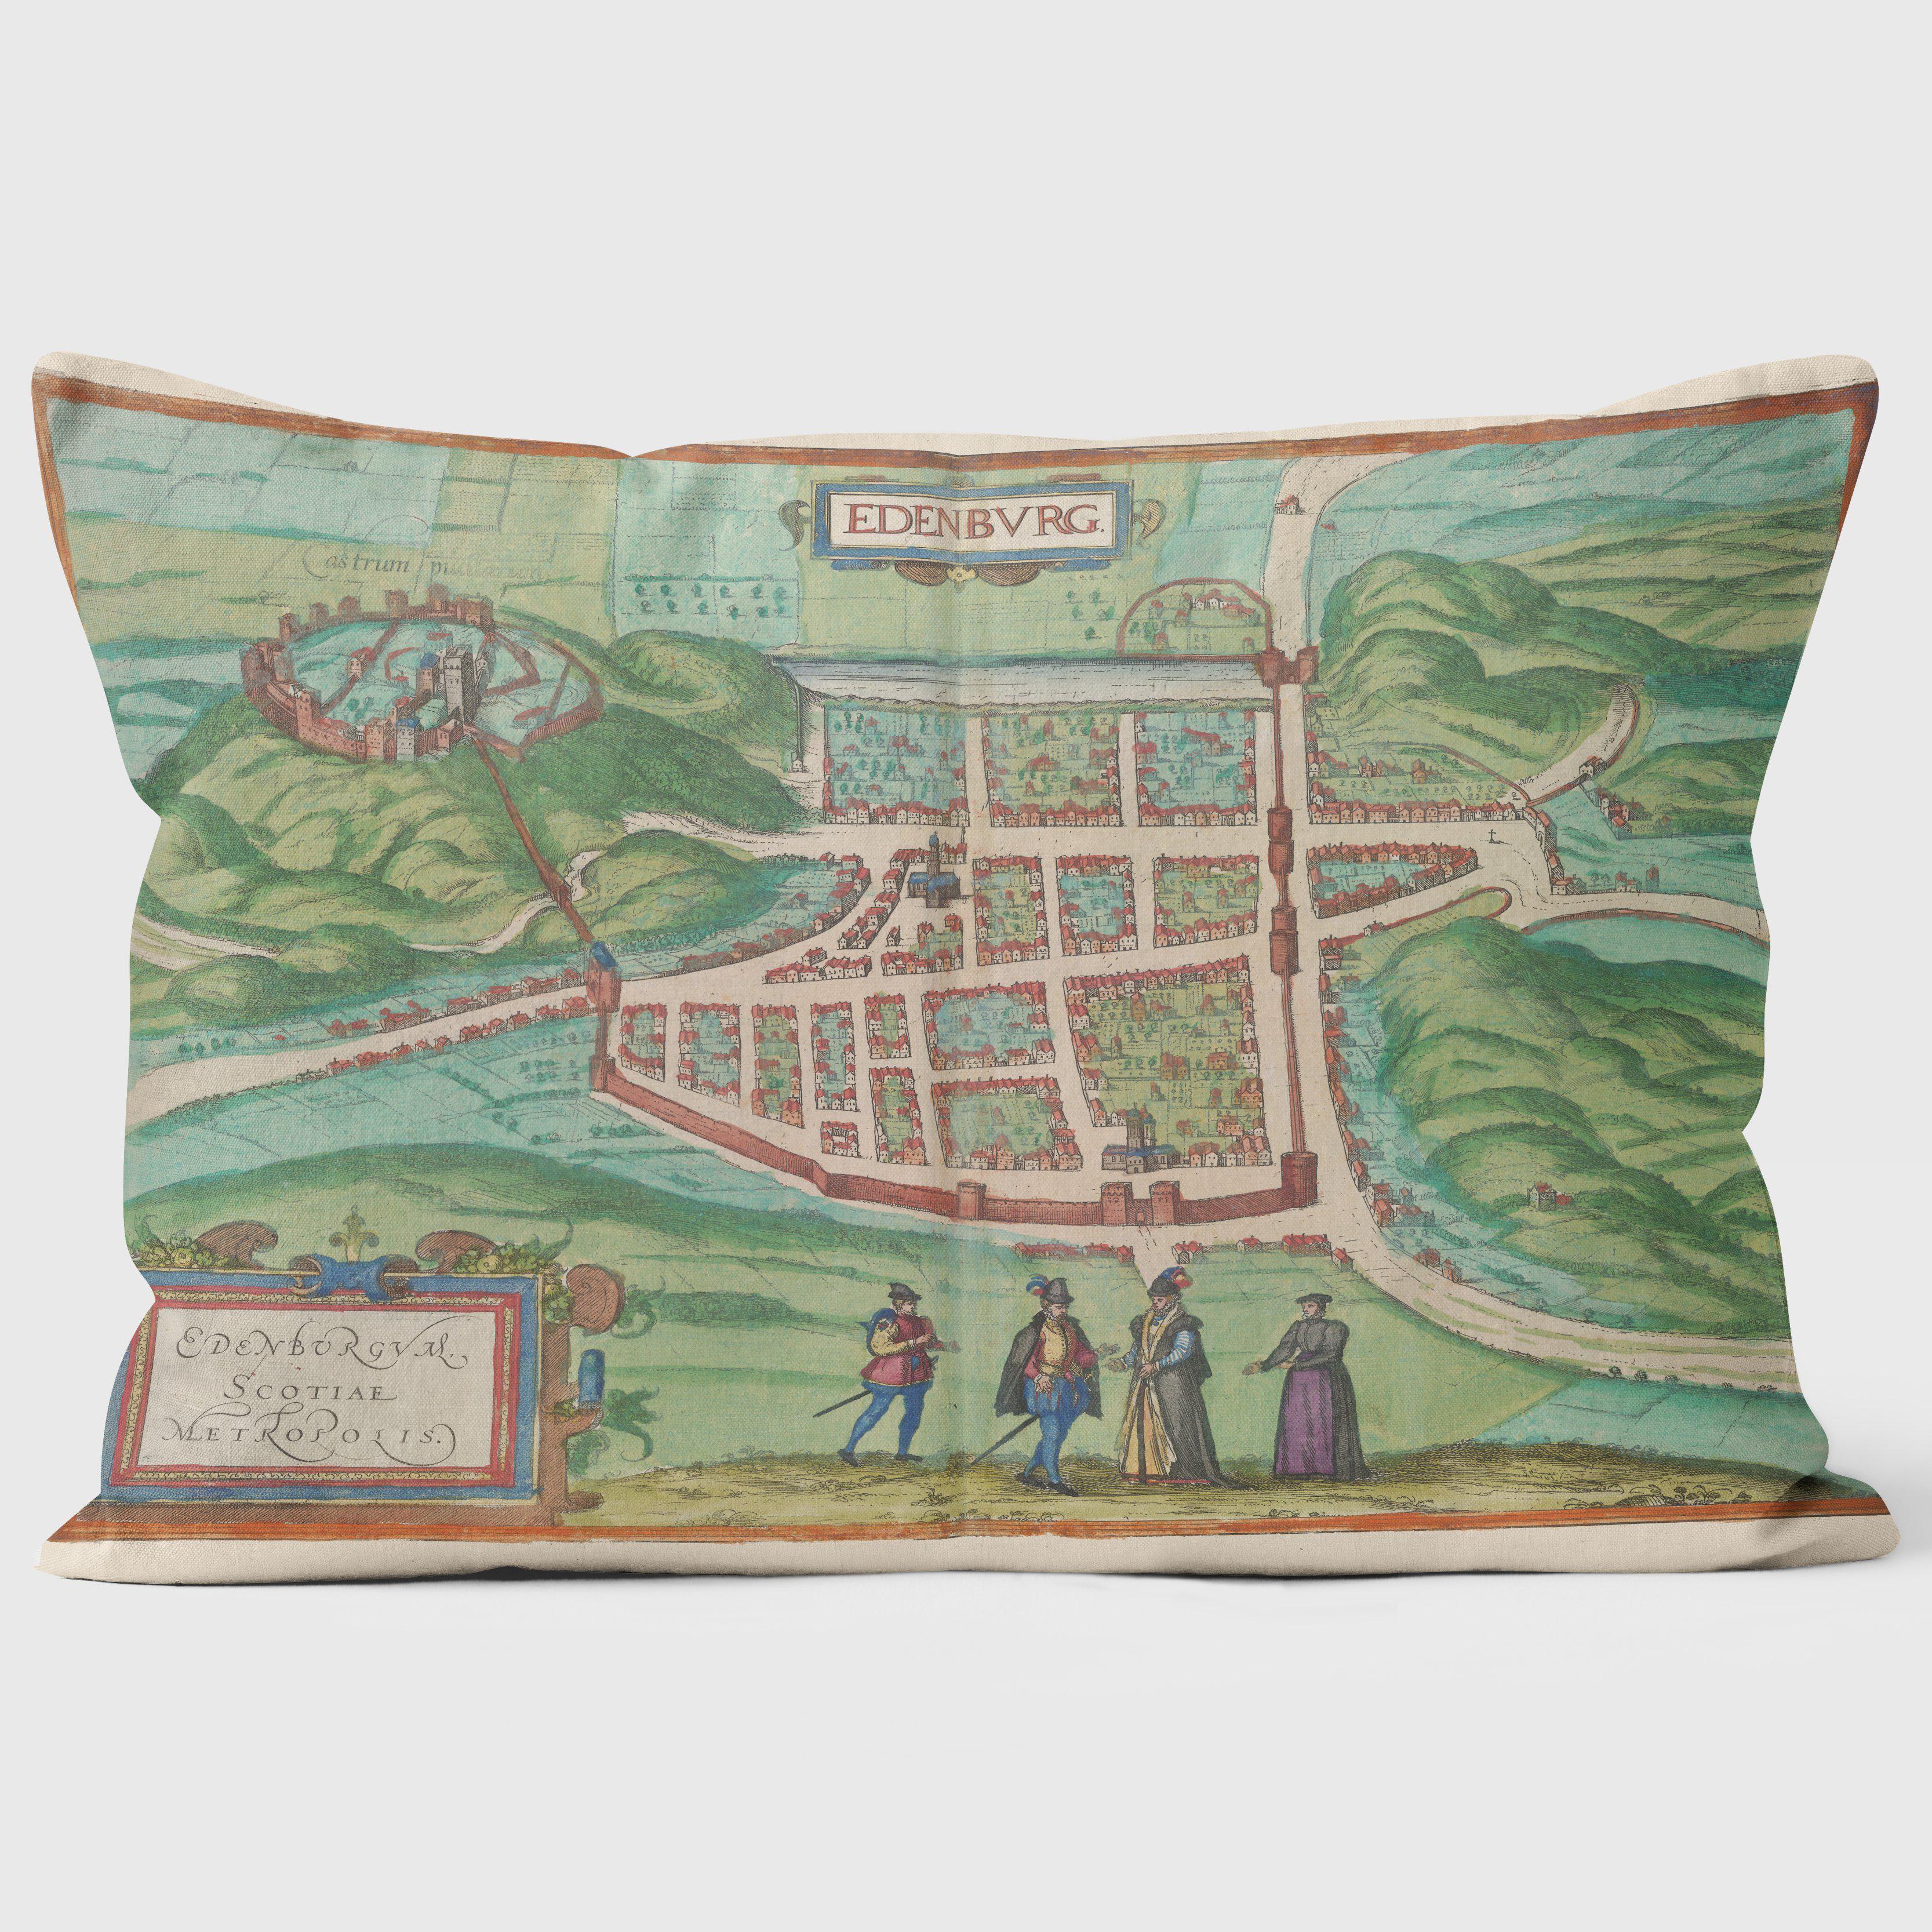 Map Of Edinburgh - British Library Cushions - Handmade Cushions UK - WeLoveCushions